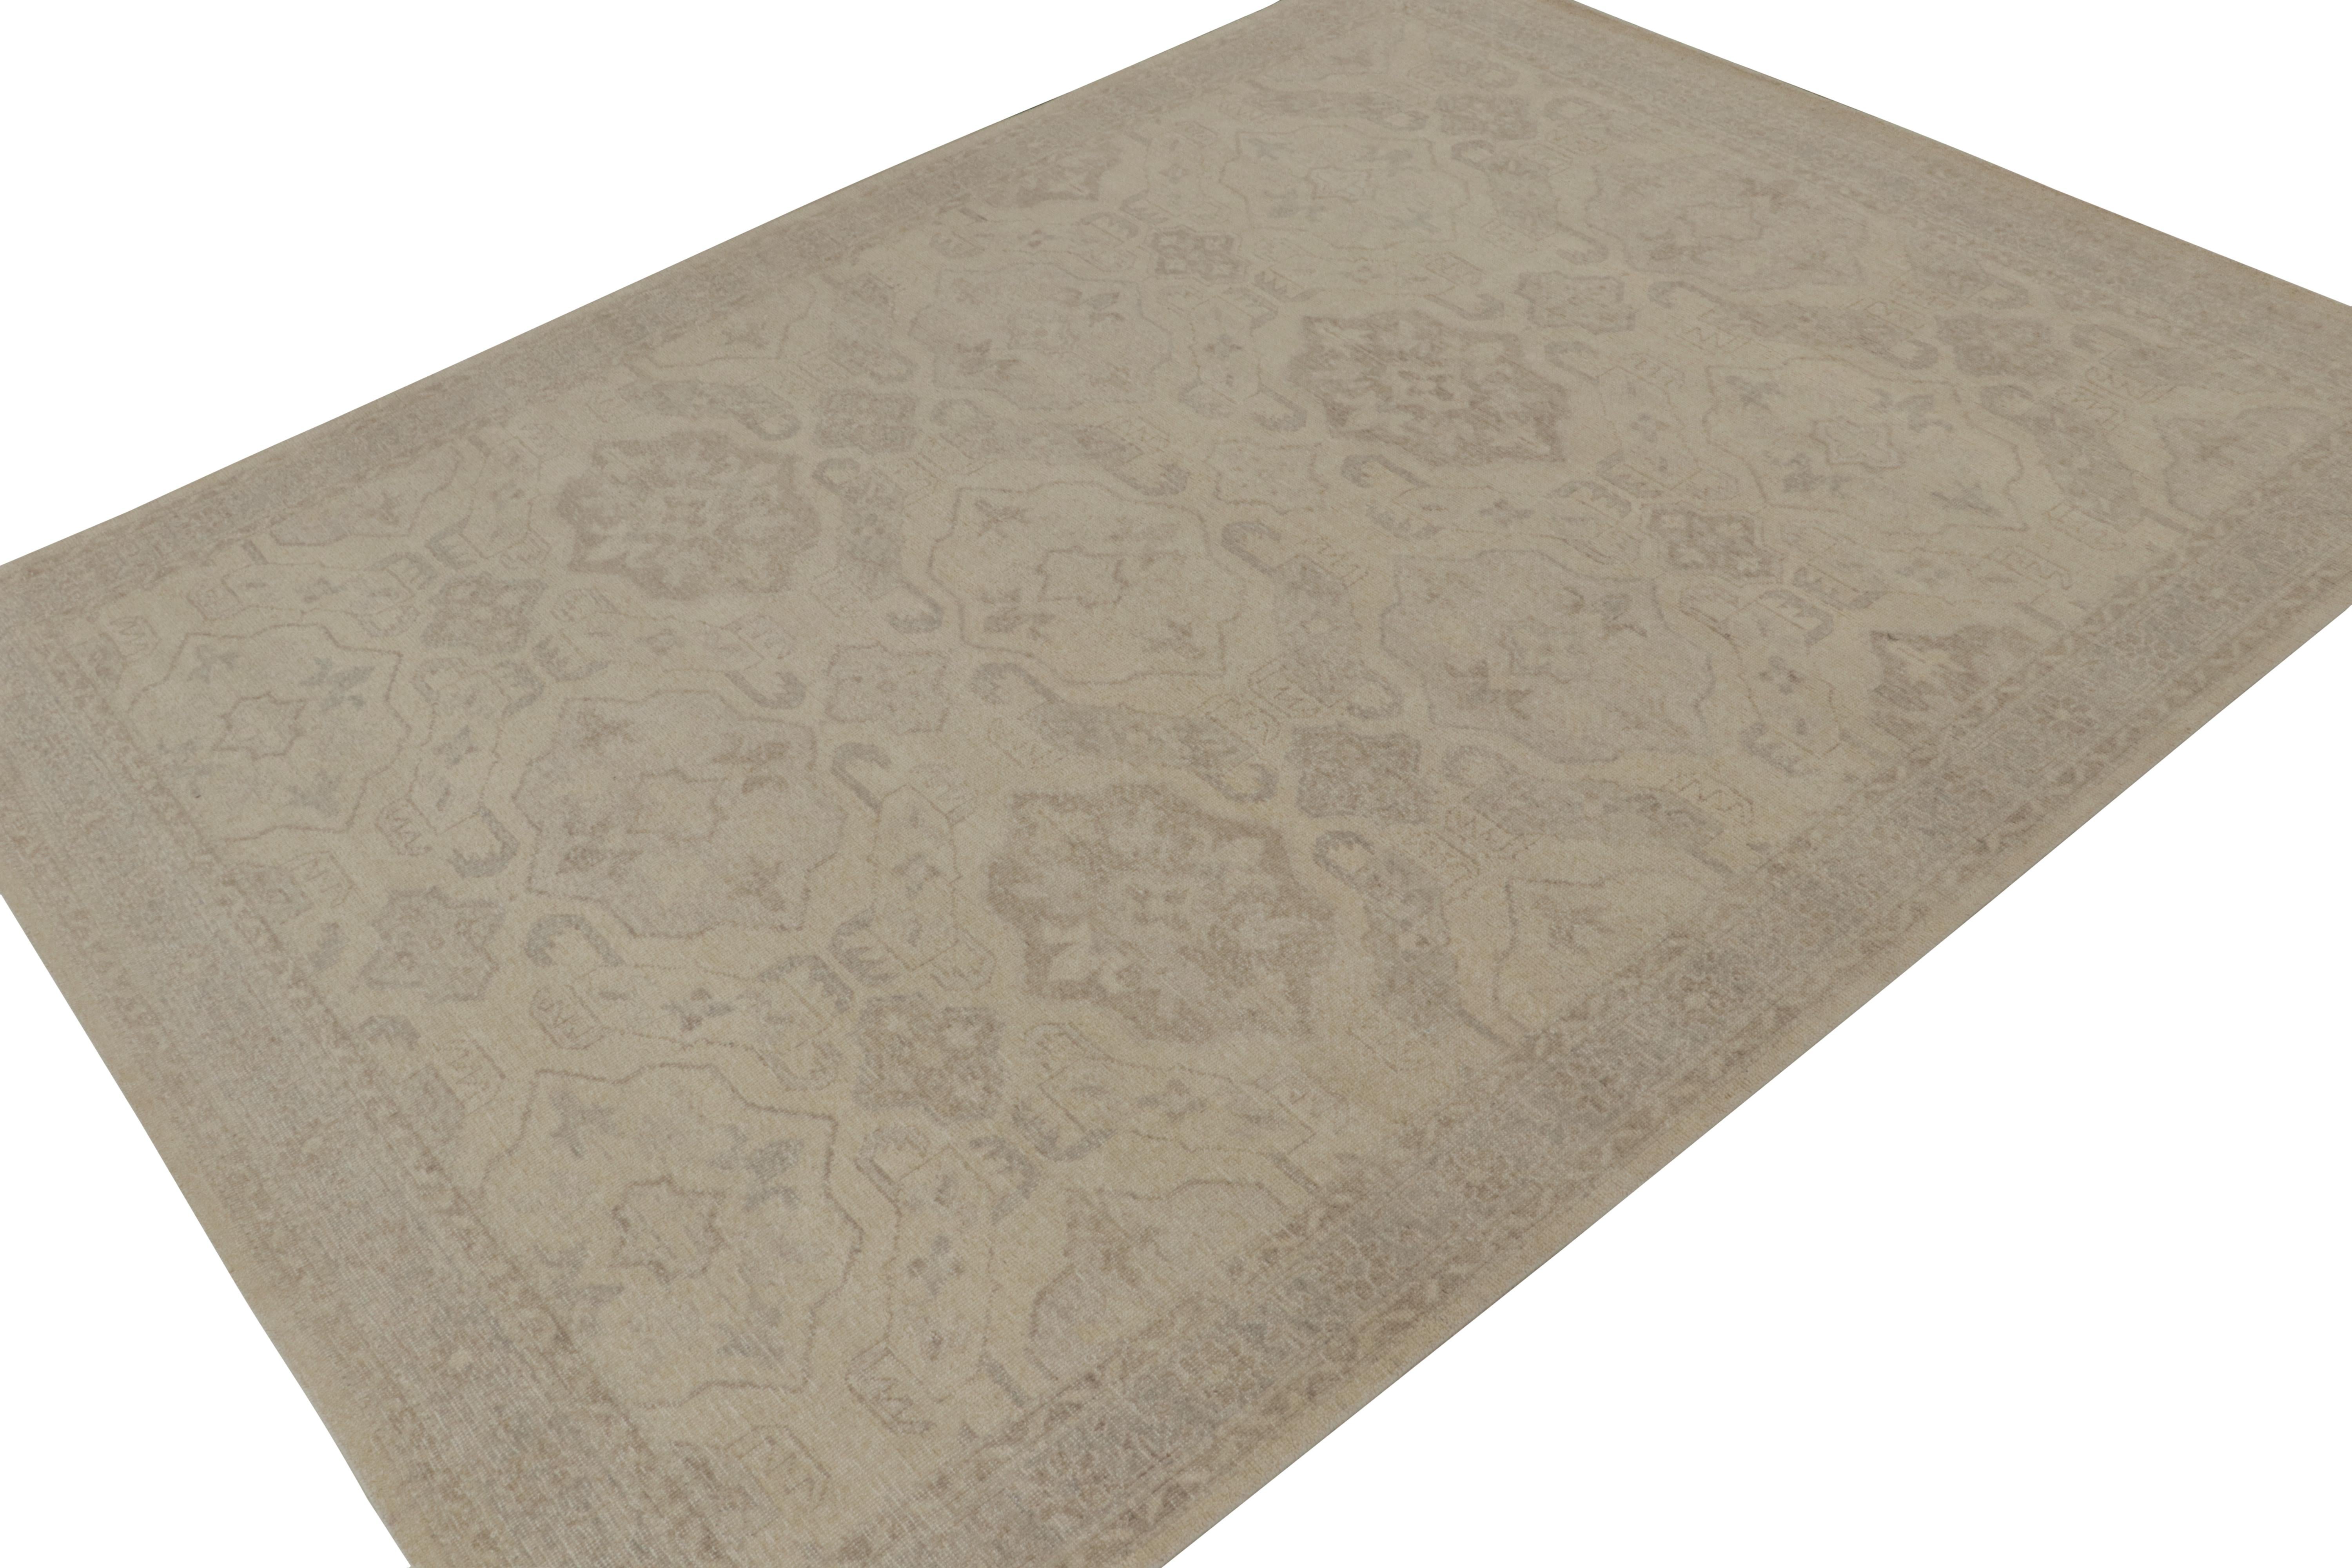 Ce tapis 9x12 en laine et coton noué à la main est un nouvel ajout à la Collection Homage de Rug & Kilim.

Plus loin dans le Design :

Le design reprend les motifs d'anciens tapis tribaux caucasiens dans un style contemporain, neutre et discret.